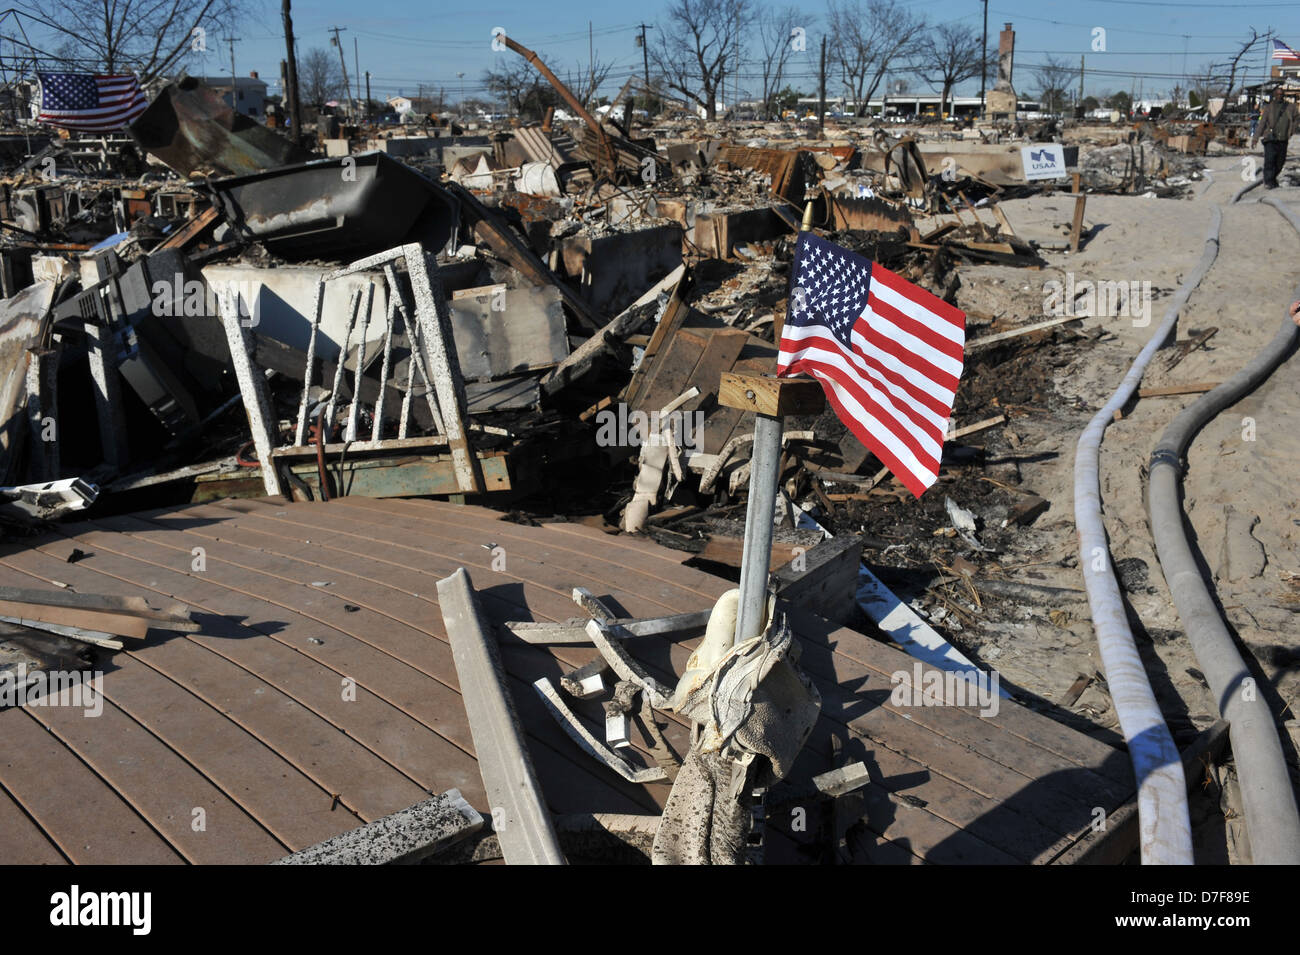 QUEENS, NY - NOVEMBER 09: Eine amerikanische Flagge fliegt aus dem verbrannten Haus in einem beschädigten Bereich Stockfoto